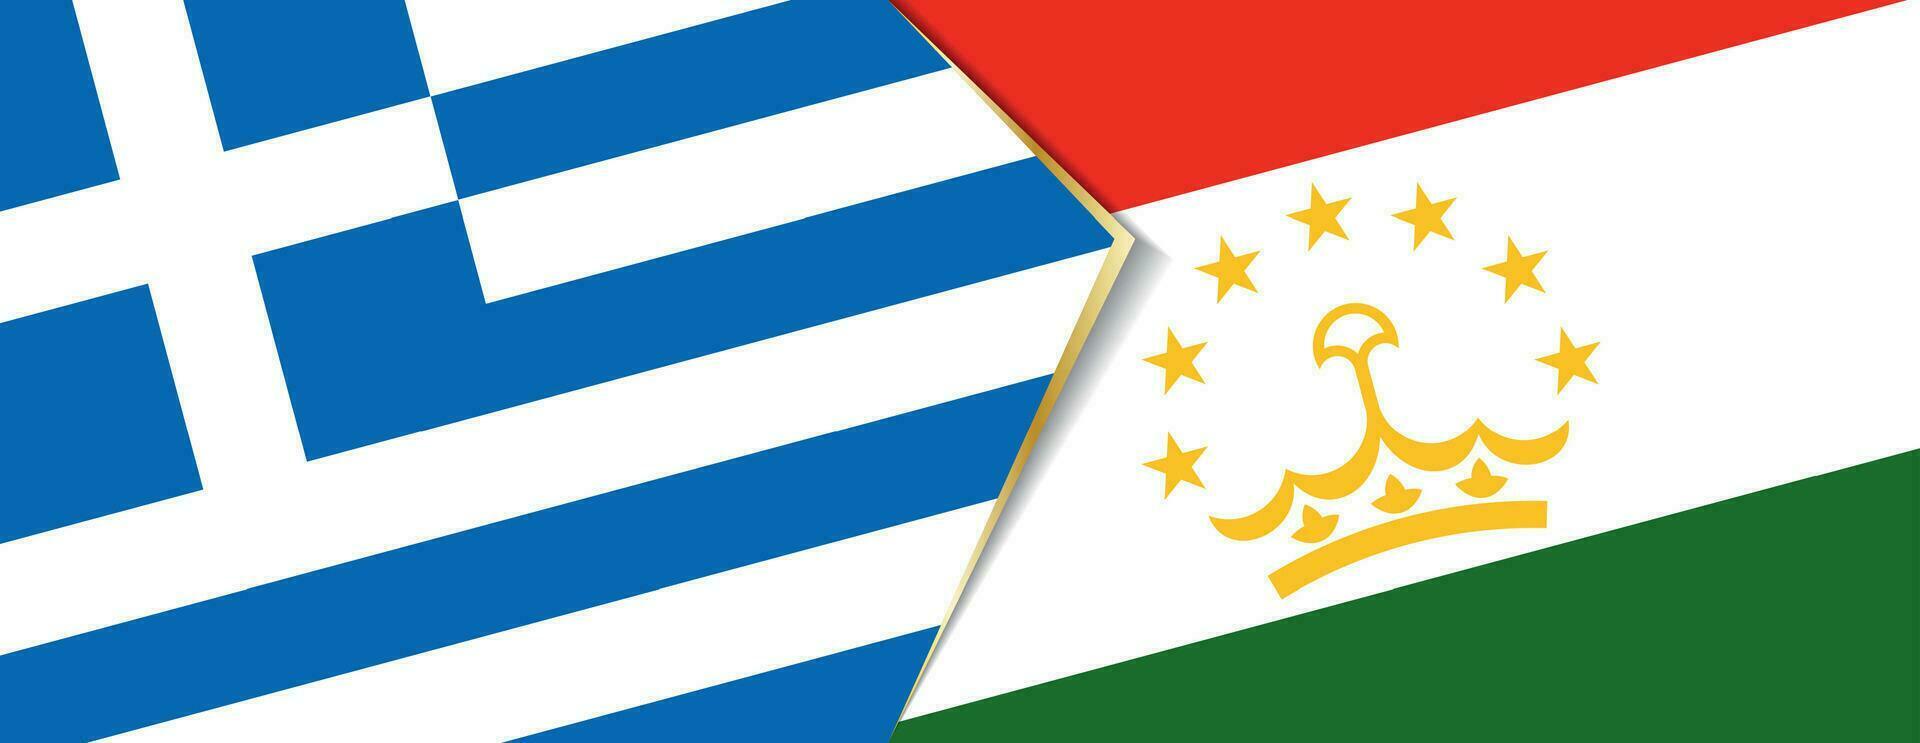 Grecia y Tayikistán banderas, dos vector banderas